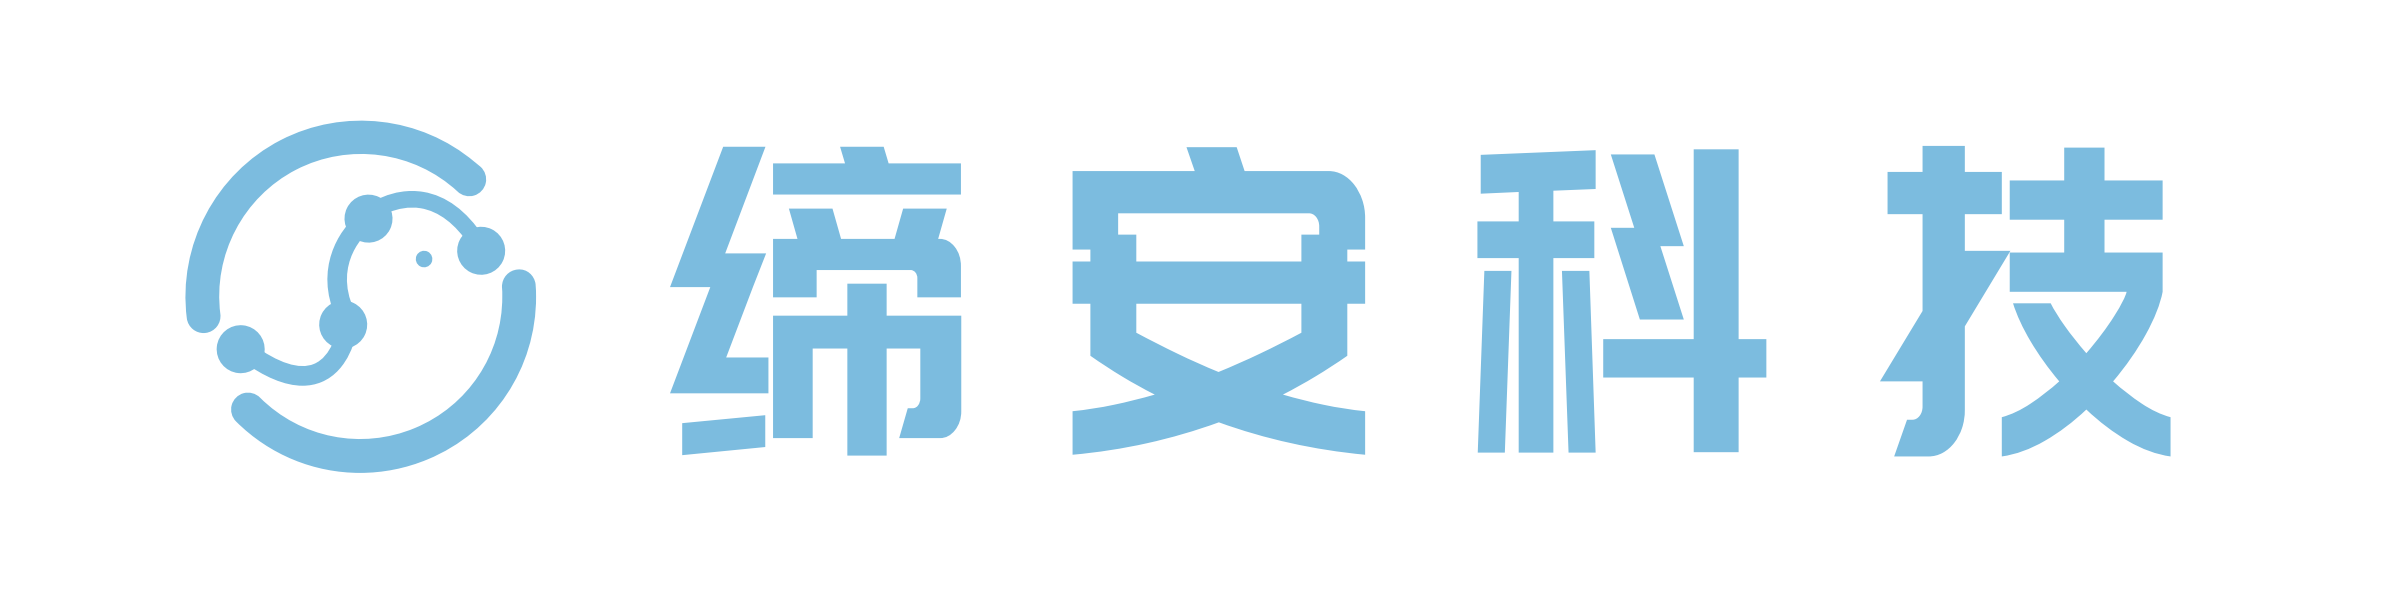 上海缔安科技股份有限公司logo_00.png